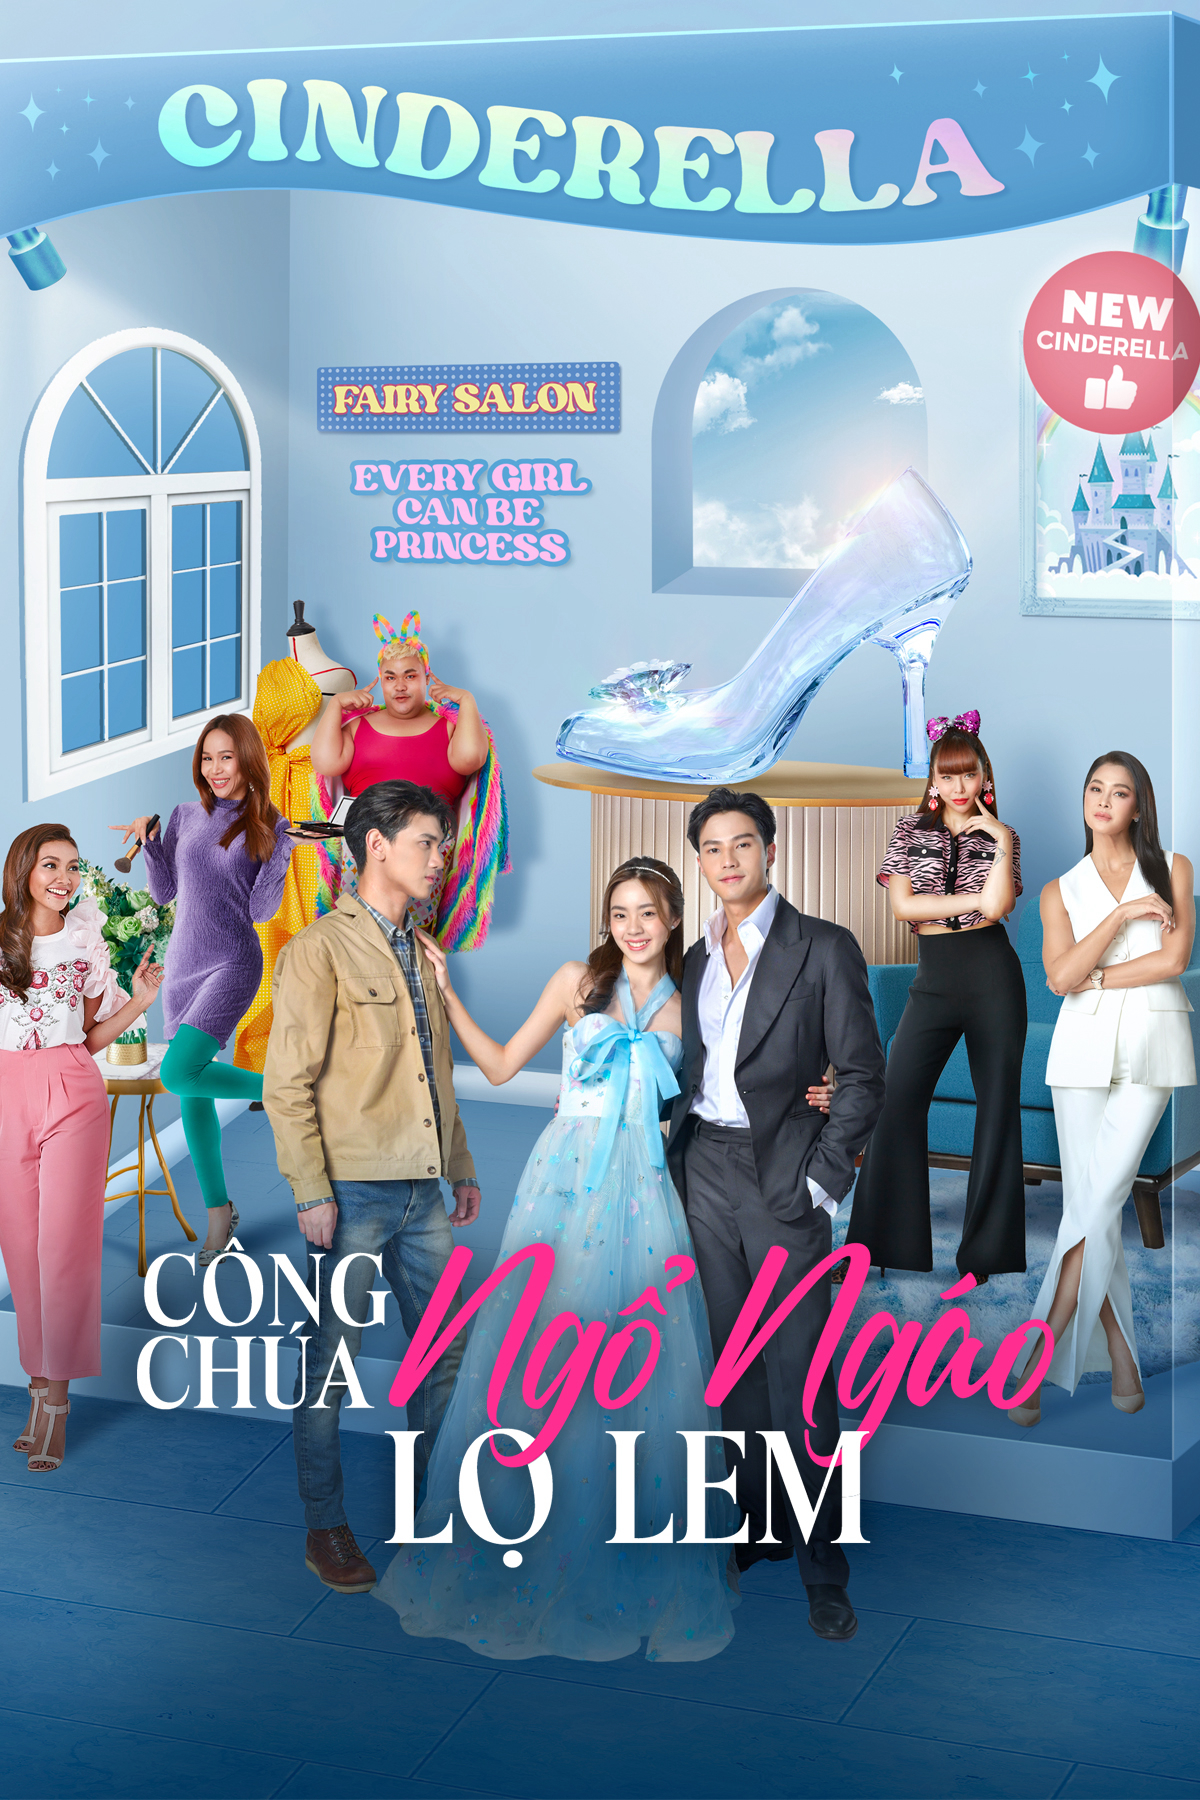 Xem Phim Công Chúa Ngổ Ngáo: Lọ Lem (My Sassy Princess: Cinderella)